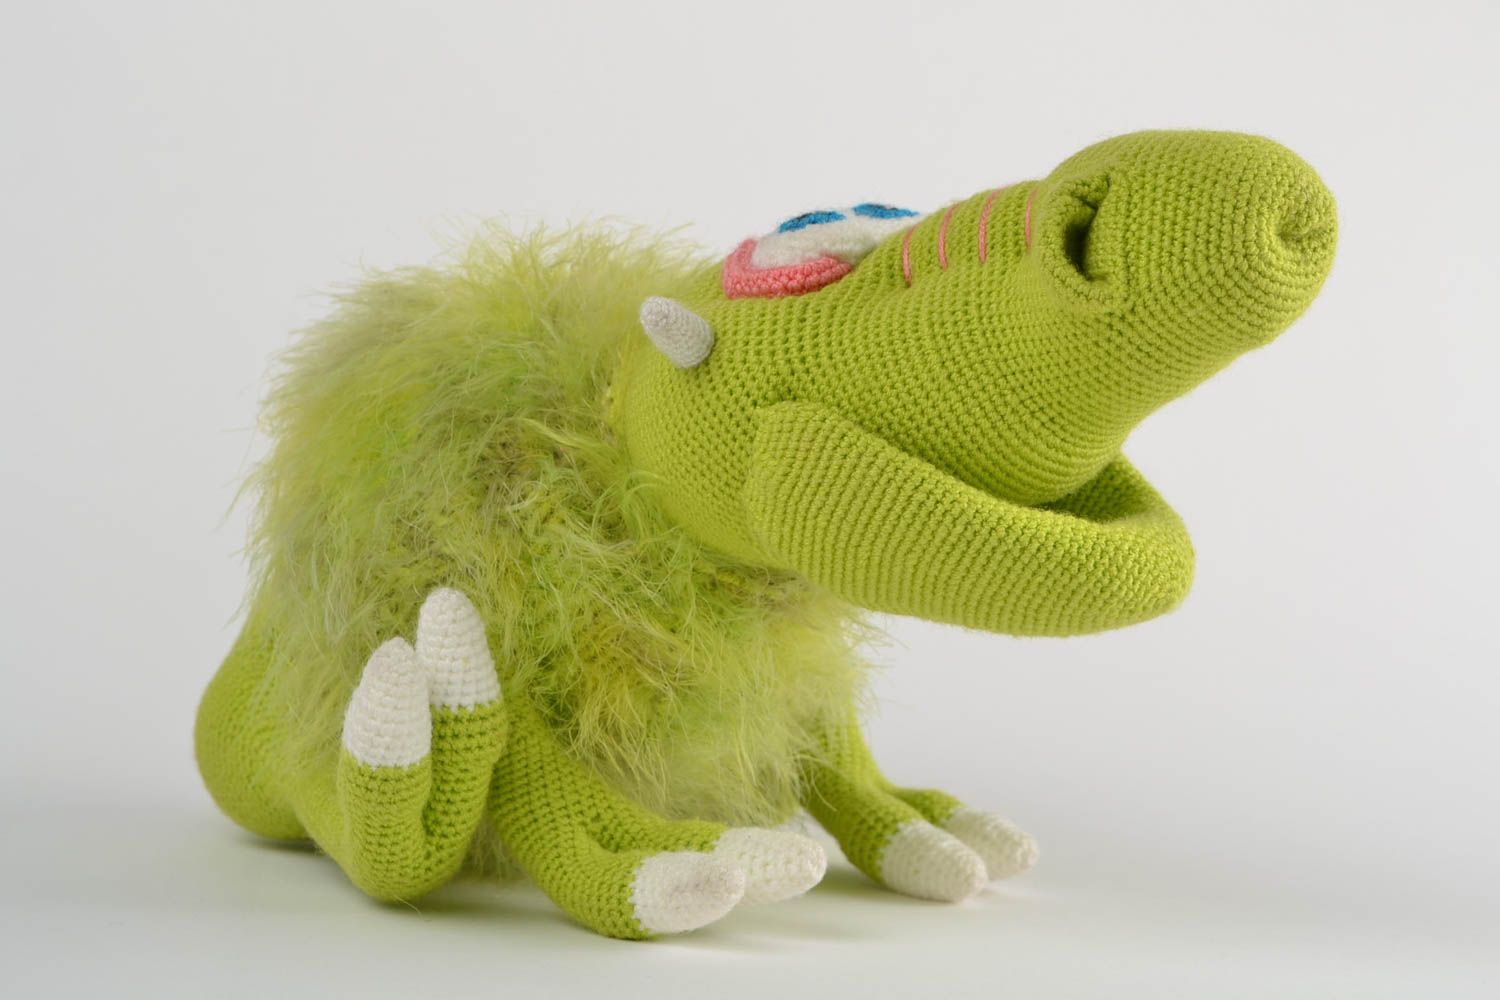 Мягкая вязаная игрушка ручной работы для детей смешная зеленая авторская Грагомот фото 2